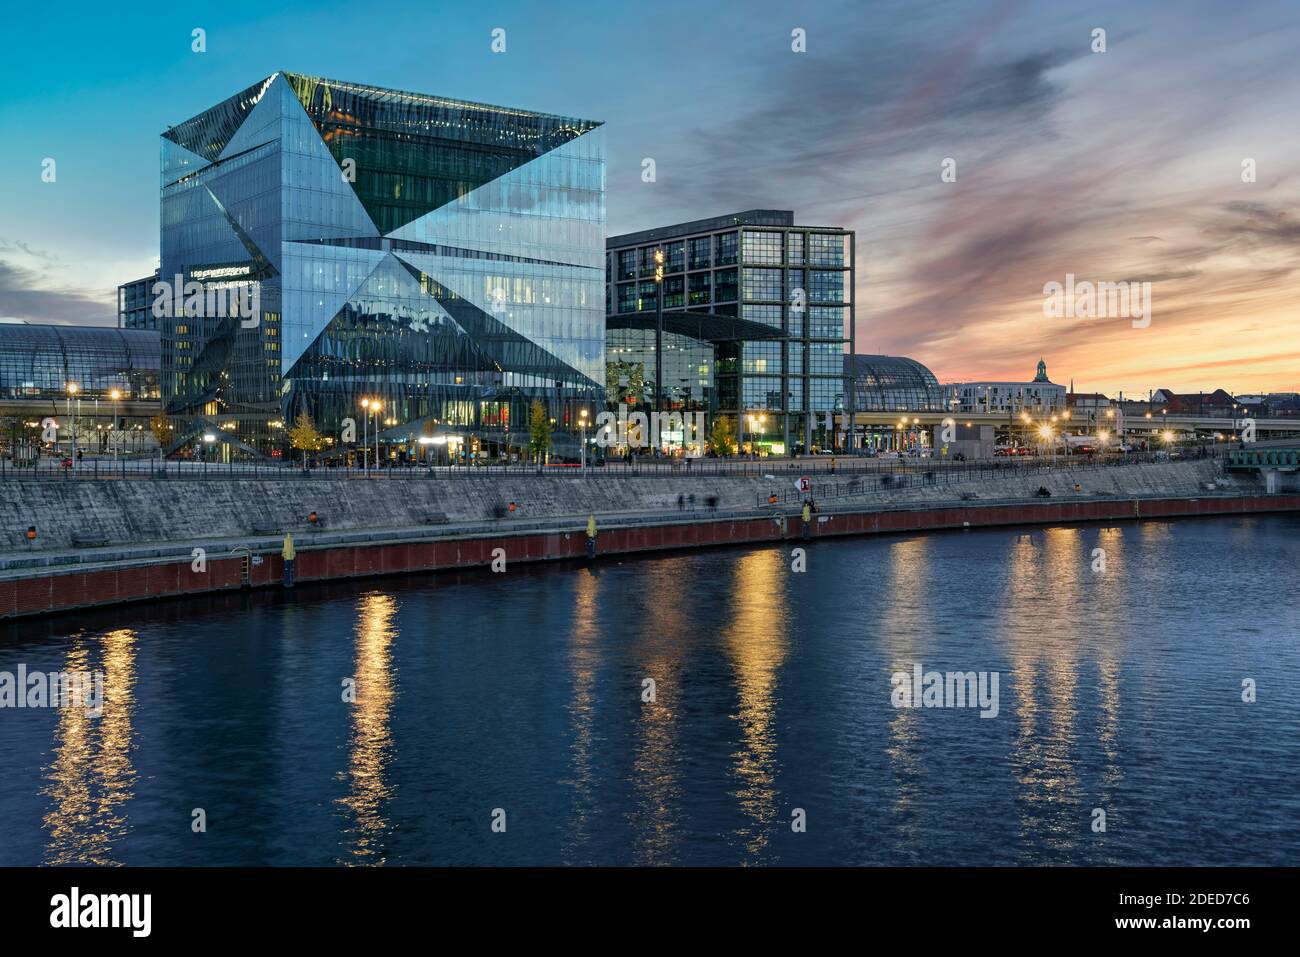 Cube Berlin, modernes Buerogebaeude am Washingtonplatz, Hauptbahnhof. Glassfade, Spiegelung, Architekturbuero 3XN . Banque D'Images